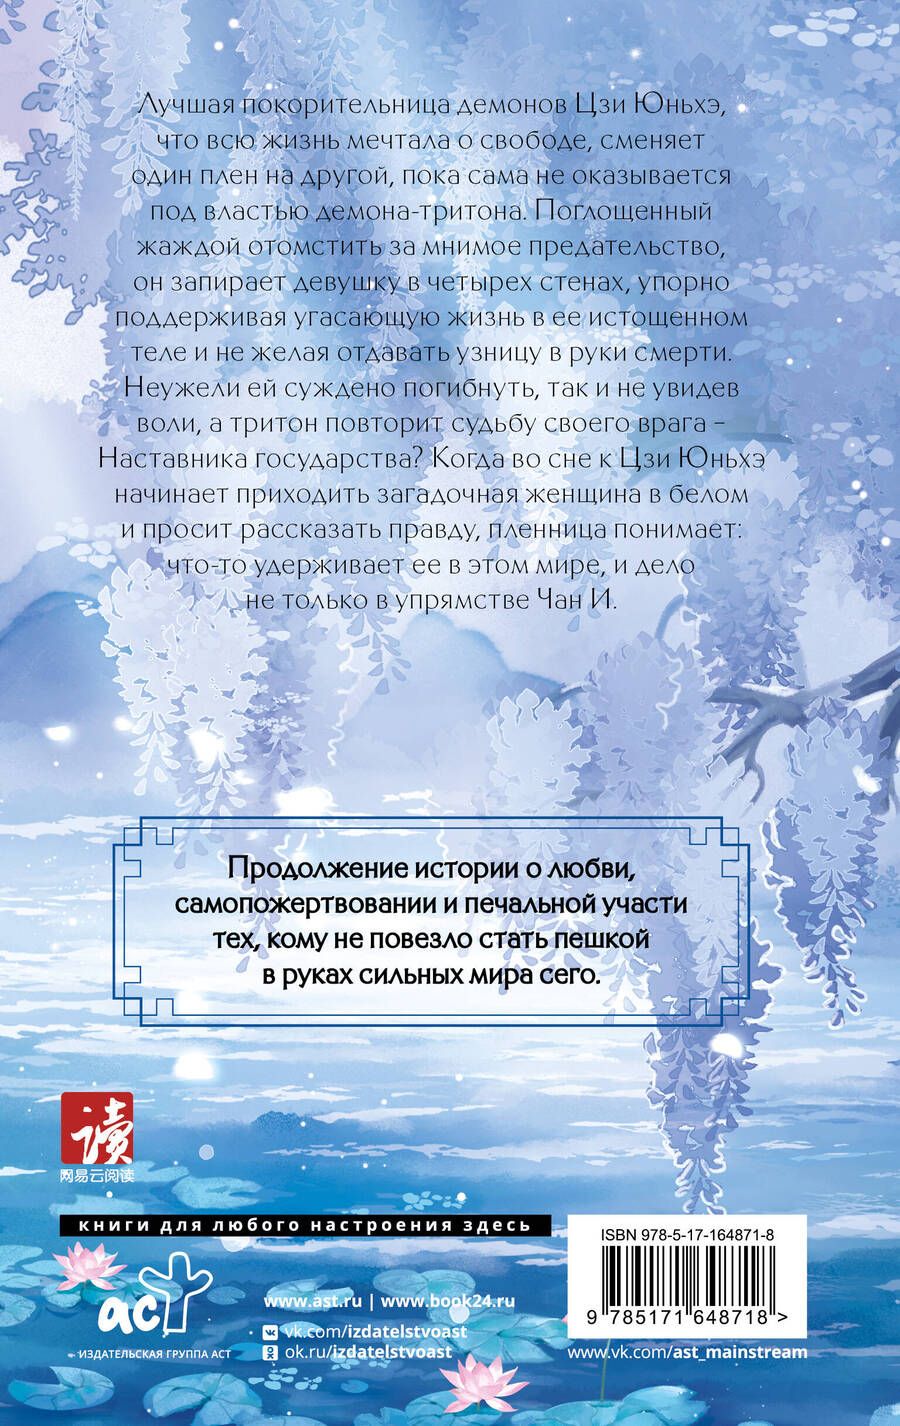 Обложка книги "Цзюлу Фэйсян: Синий шепот. Книга 2"